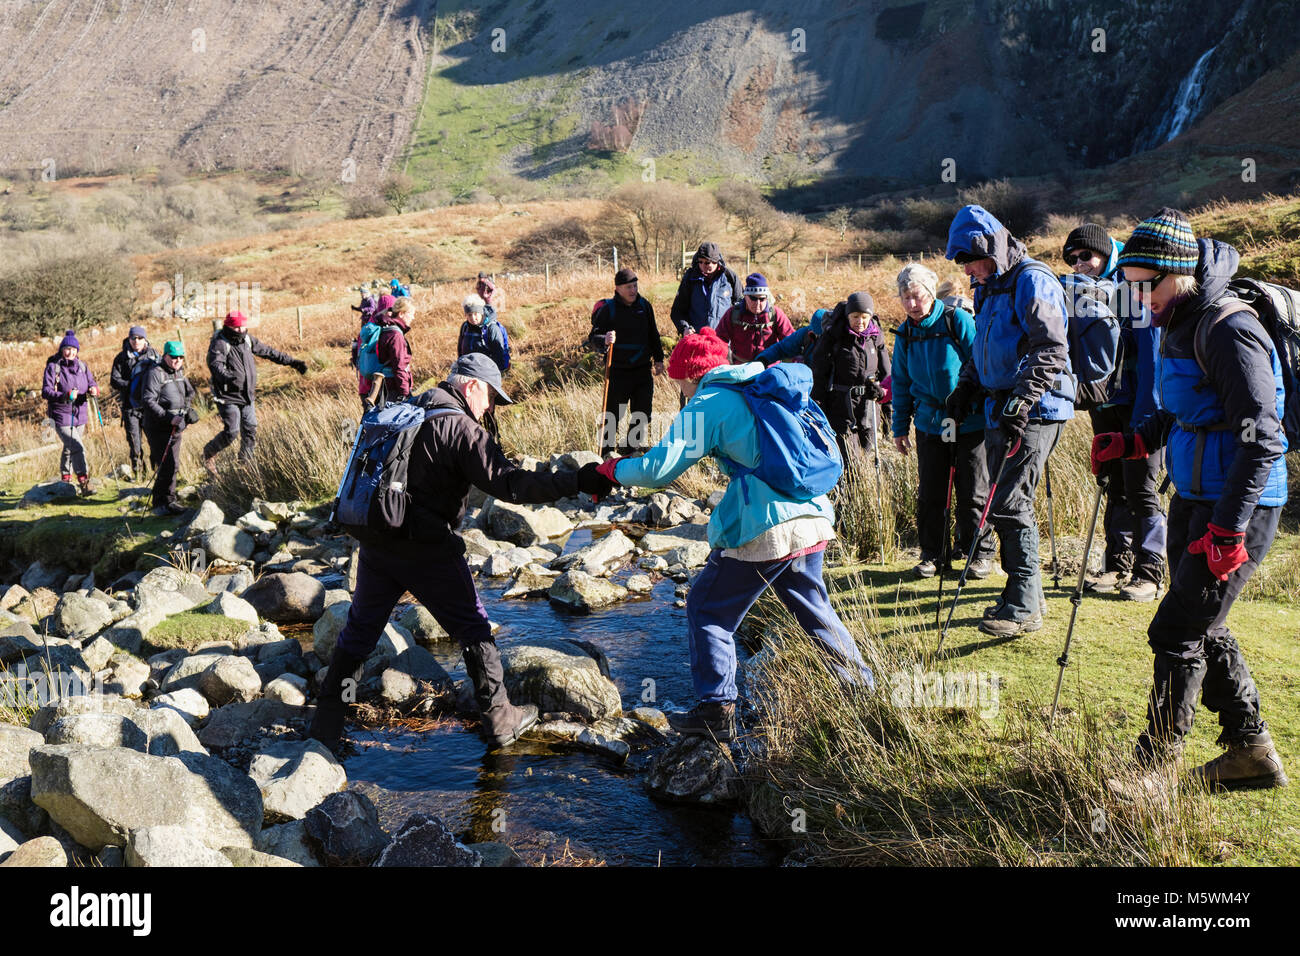 Groupe de randonneurs randonneurs traversant un ruisseau avec l'homme d'aider quelqu'un à traverser en toute sécurité. Abergwyngregyn, Gwynedd, Pays de Galles, Royaume-Uni, Angleterre Banque D'Images